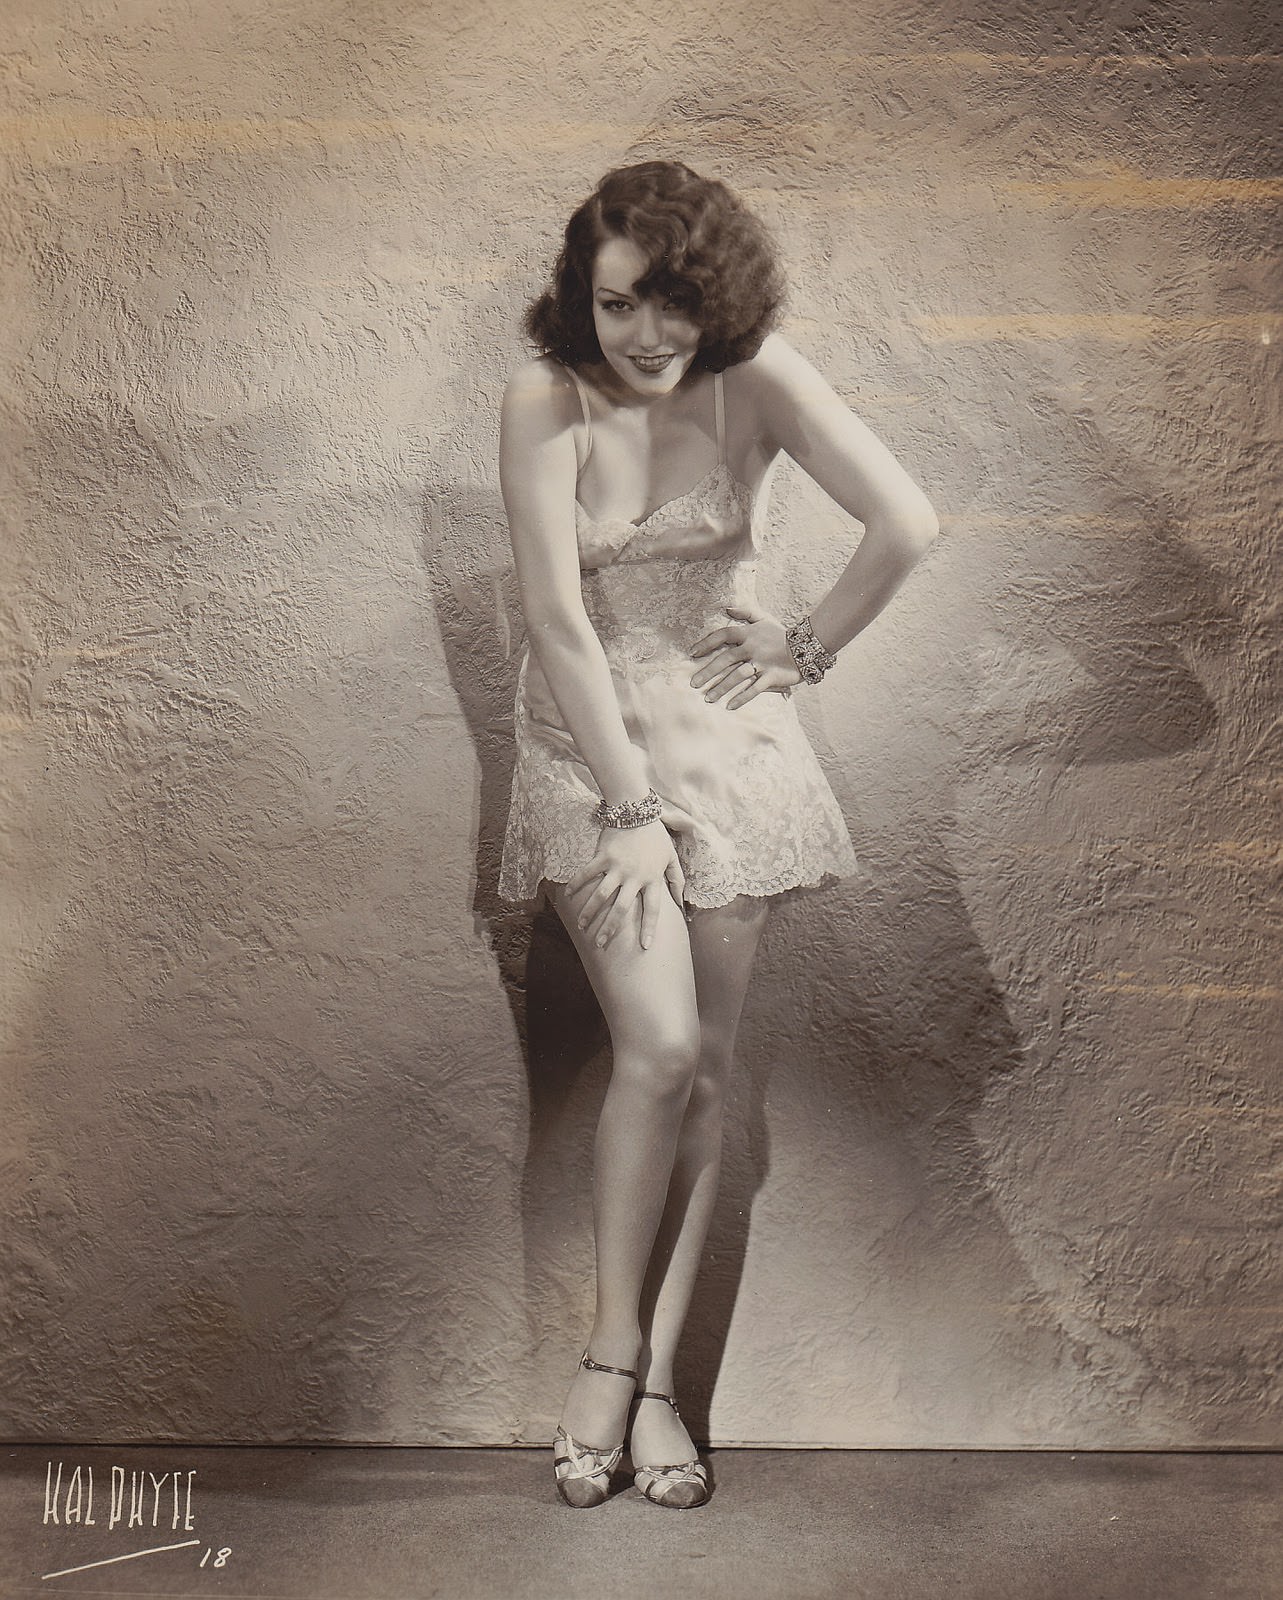 Lupe Velez, 1933